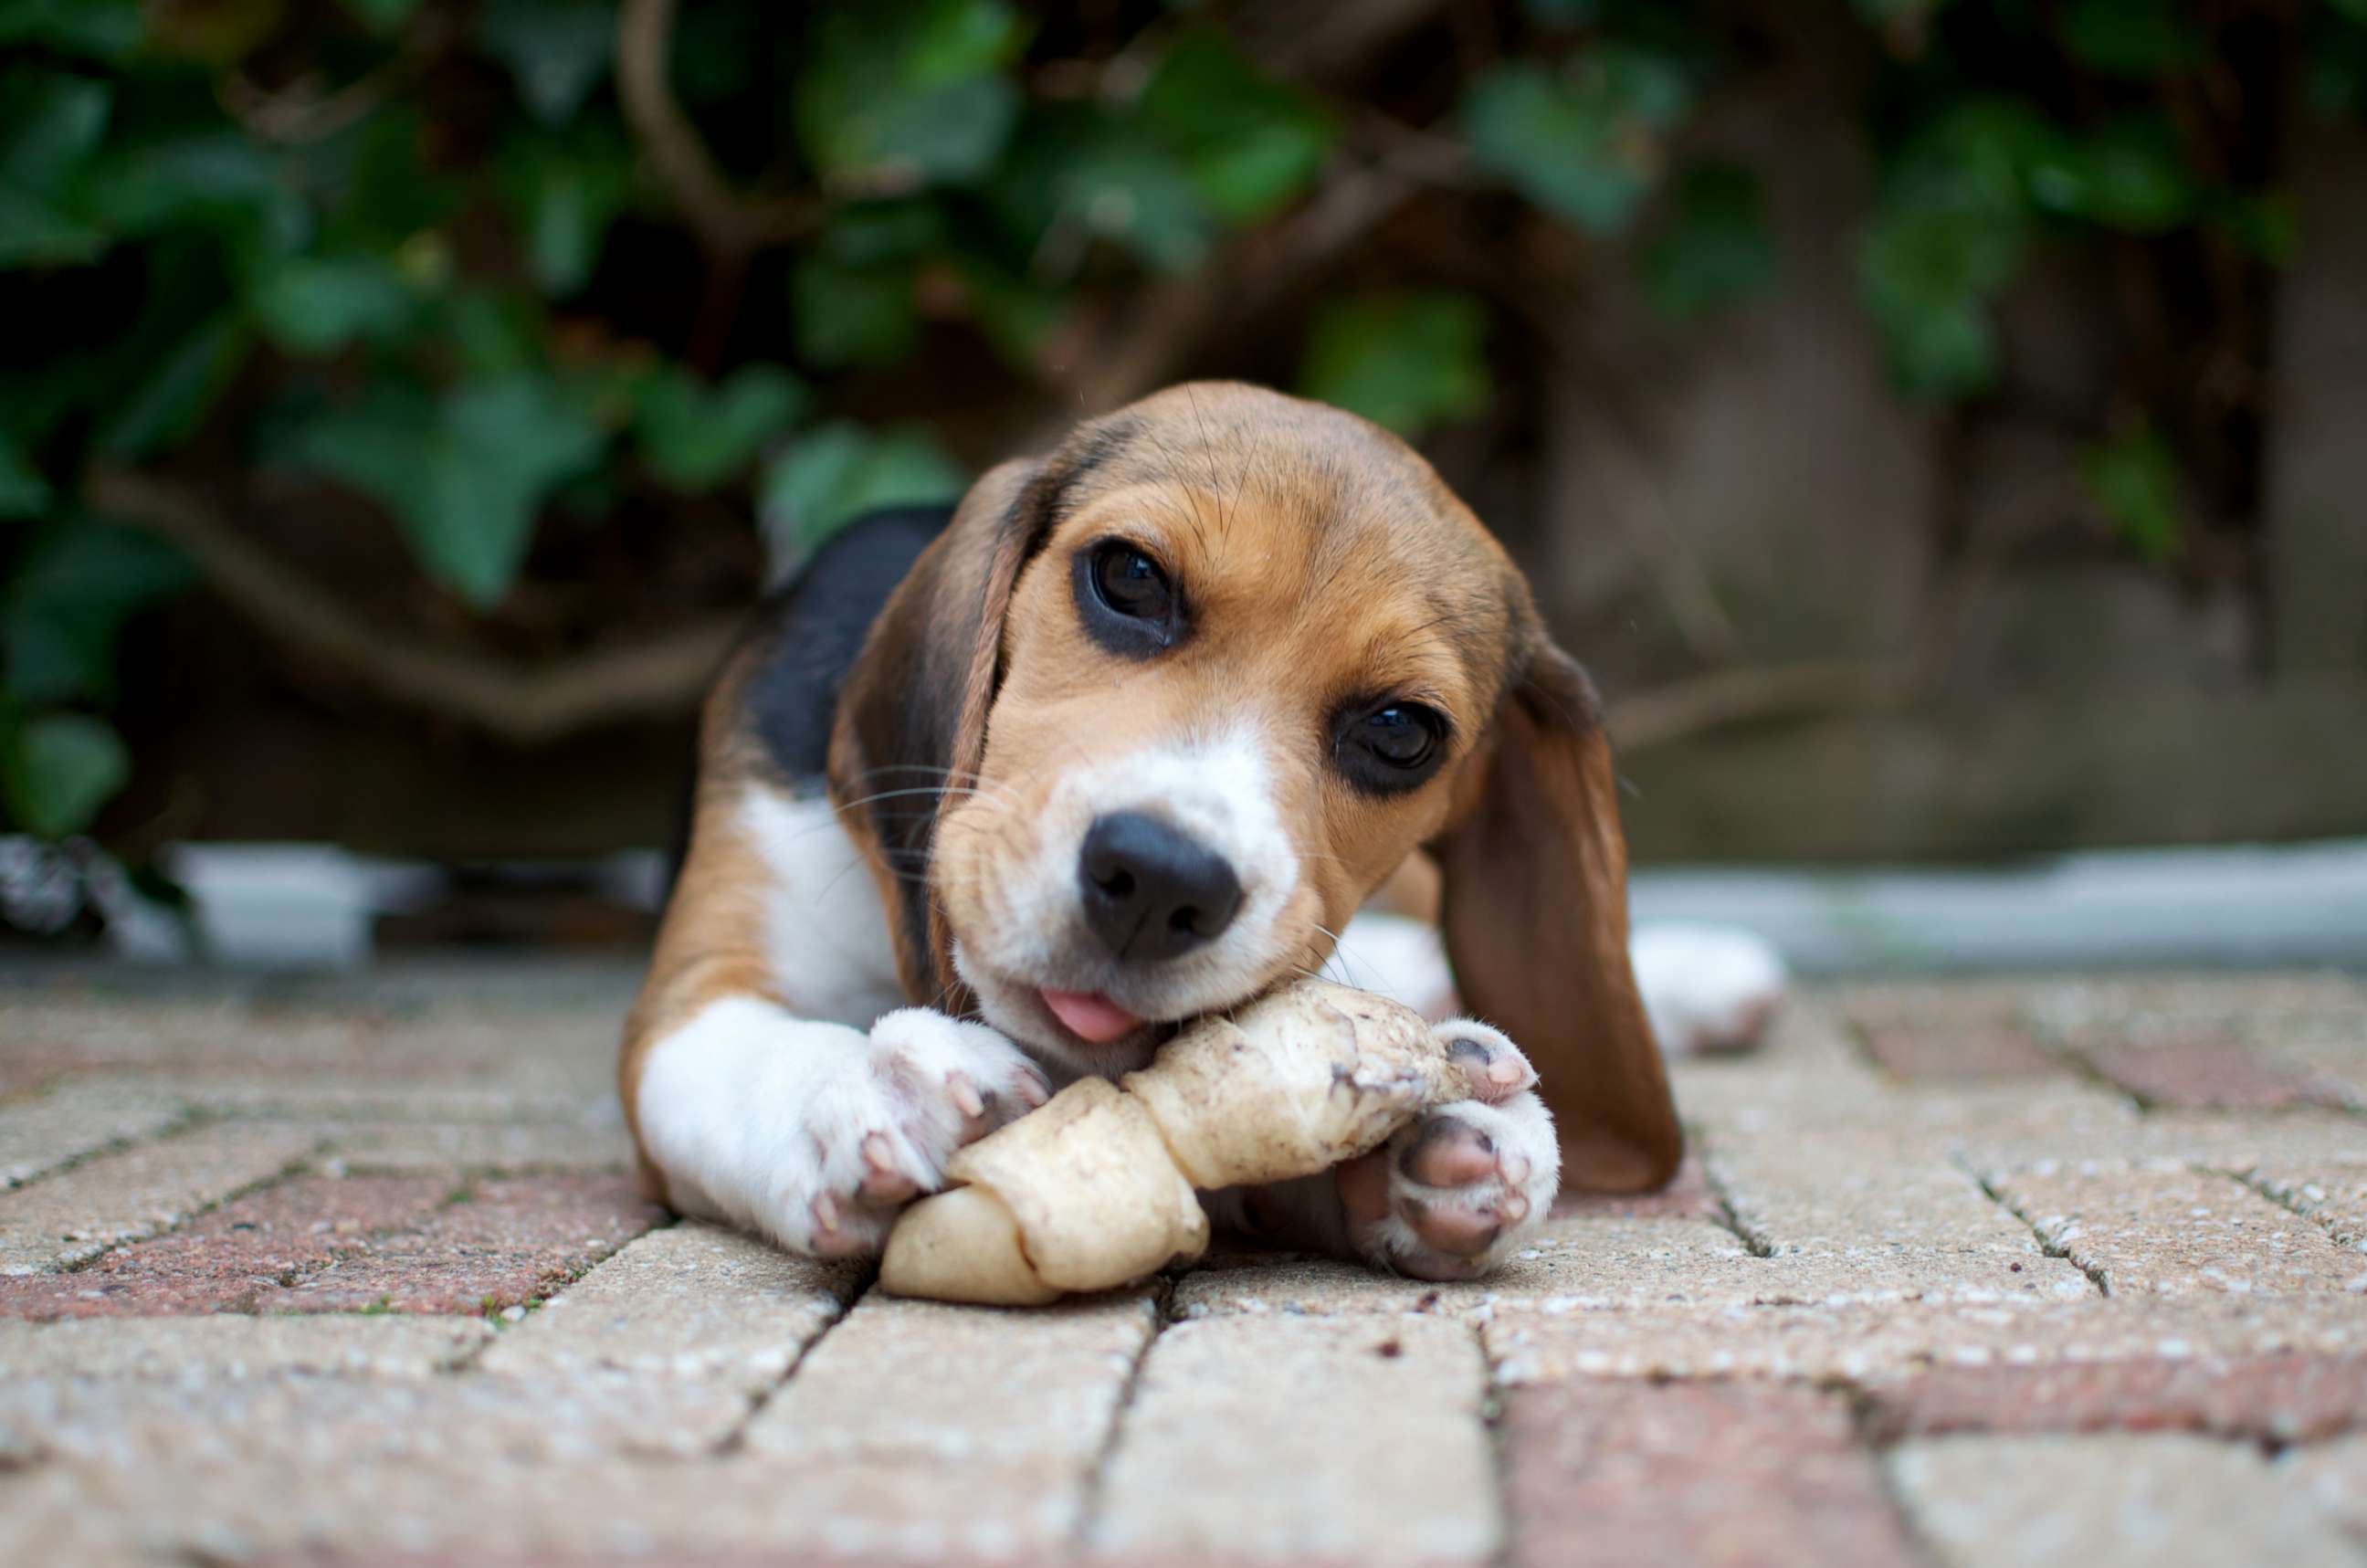 PHOTO: A dog chews on a bone.